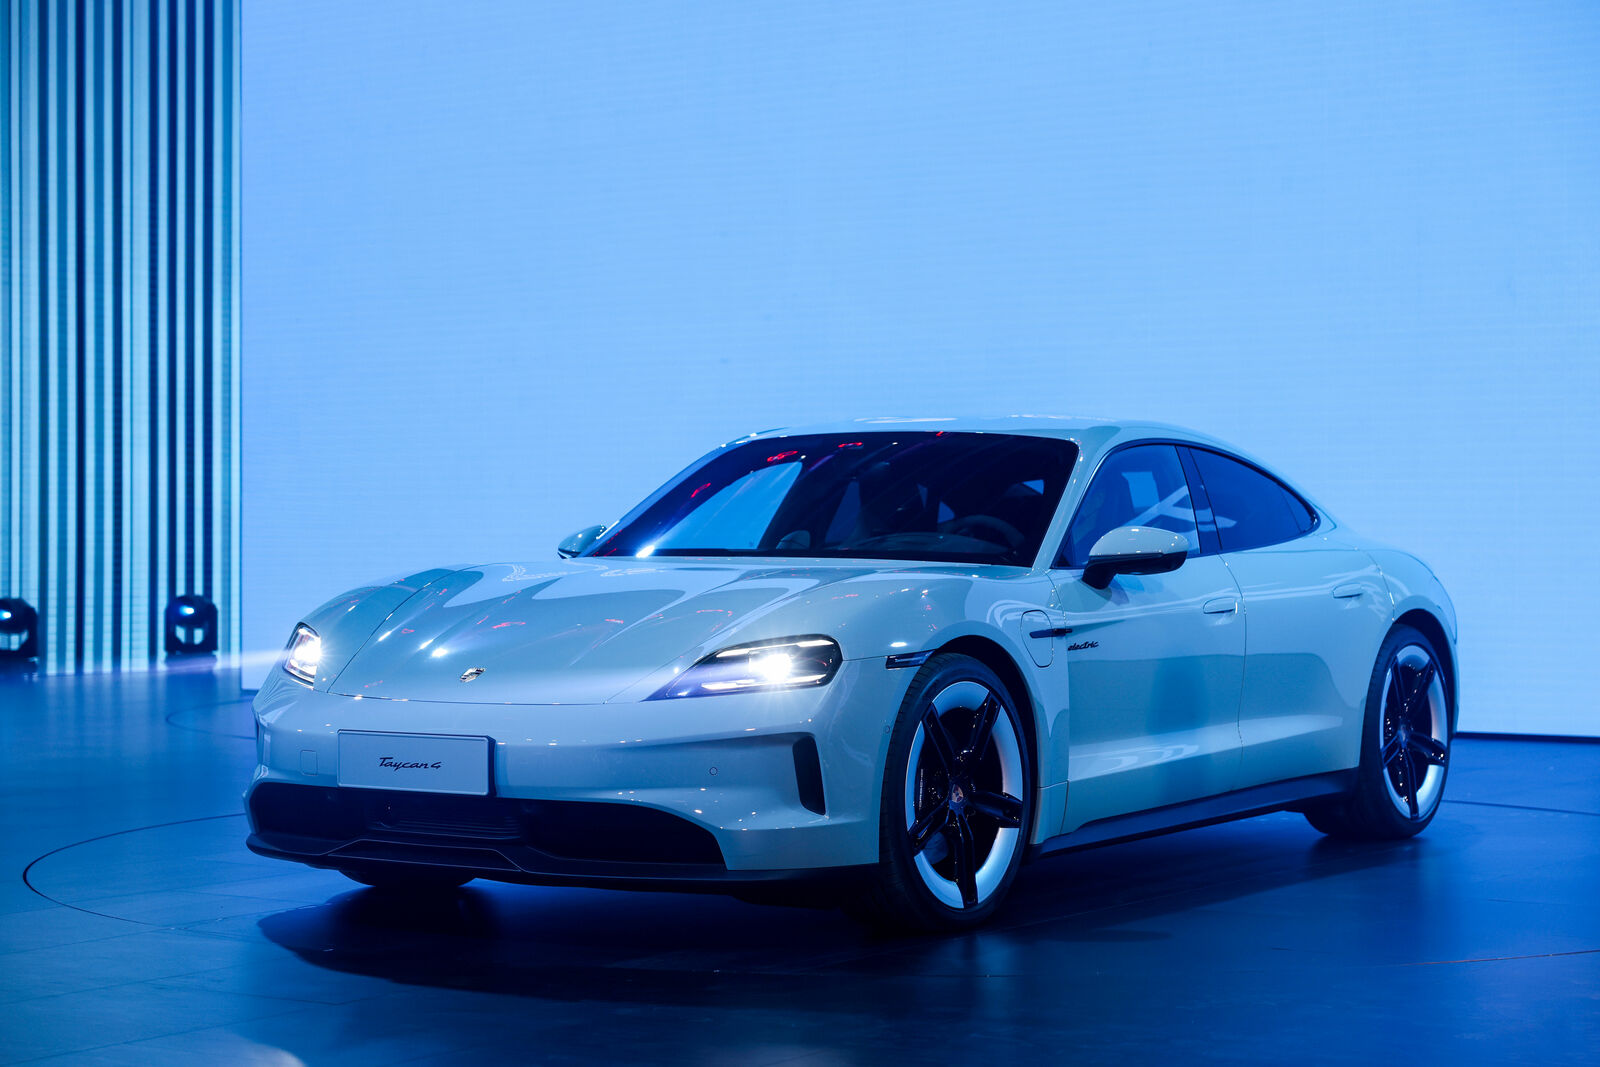 Ein eleganter, weißer Porsche Taycan 4S wird in einem hell beleuchteten Ausstellungsraum mit futuristischem blauem Hintergrund präsentiert.